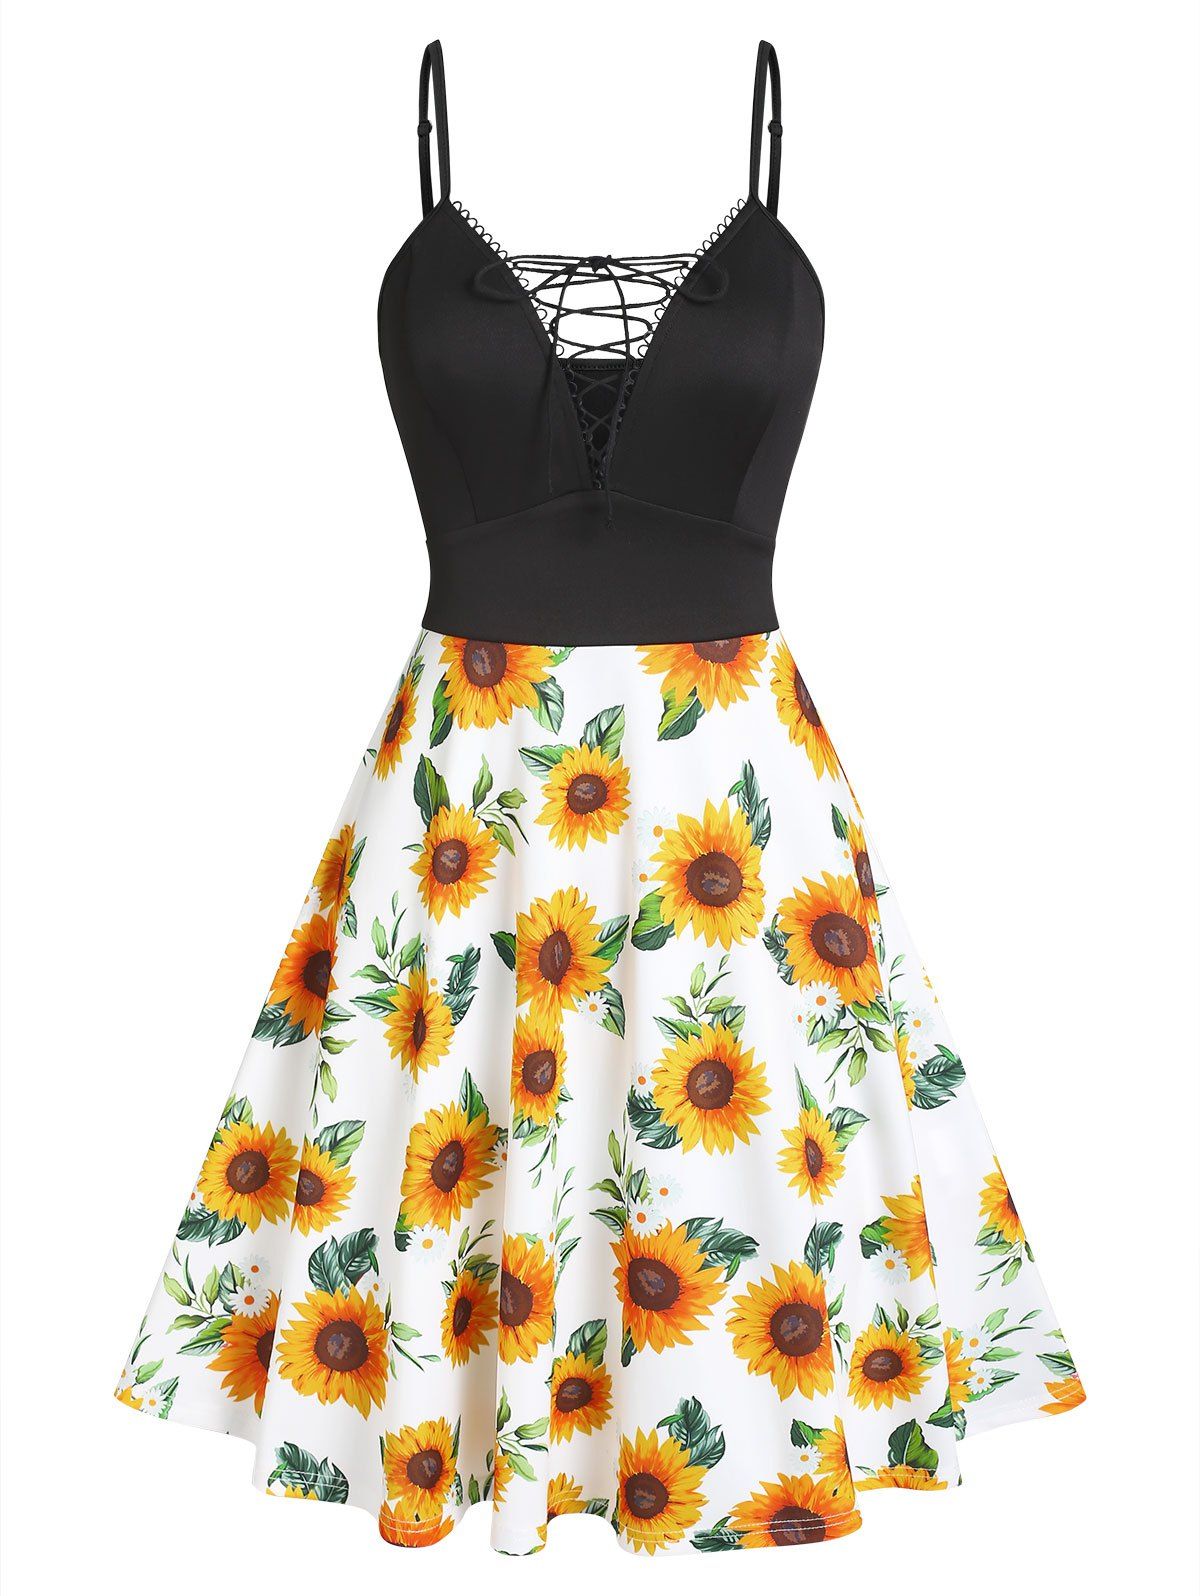 Sunflower Print Lace Up Picot Trim Cami Dress - multicolor M